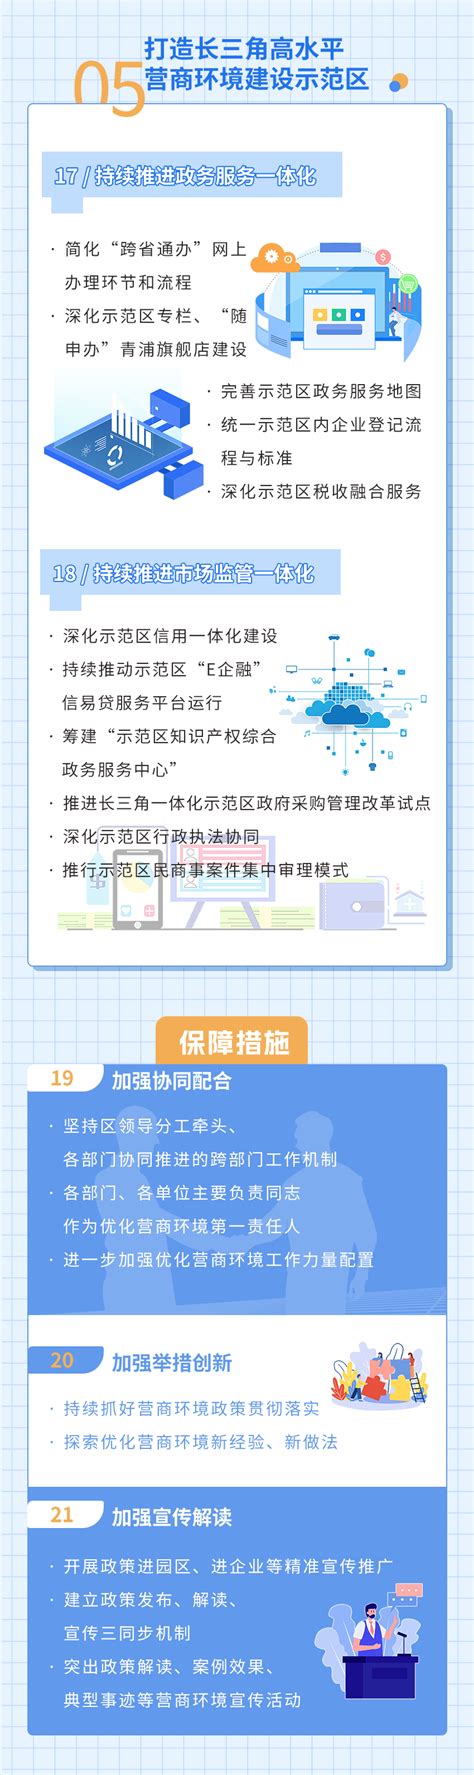 网站建设注重的几点要求【青浦seo】深圳市深一网络科技有限公司